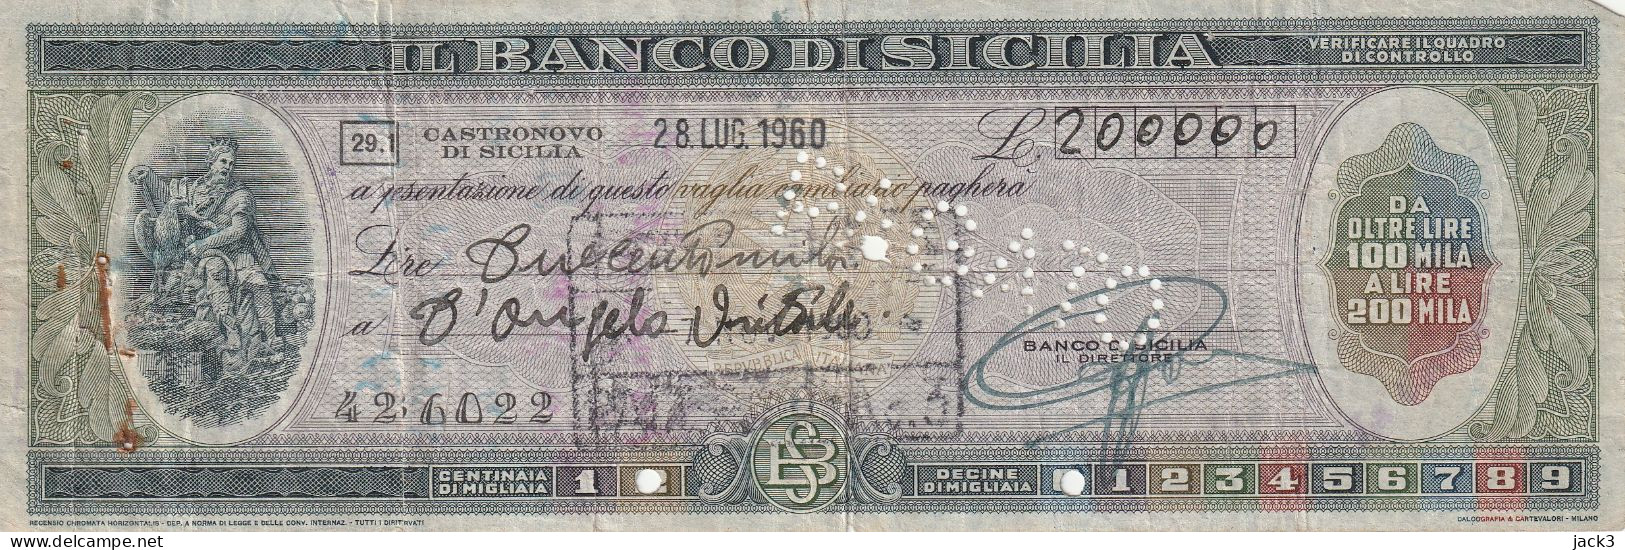 ASSEGNO - BANCO DI SICILIA - CASTRONOVO DI SICILIA 1960 - Schecks  Und Reiseschecks